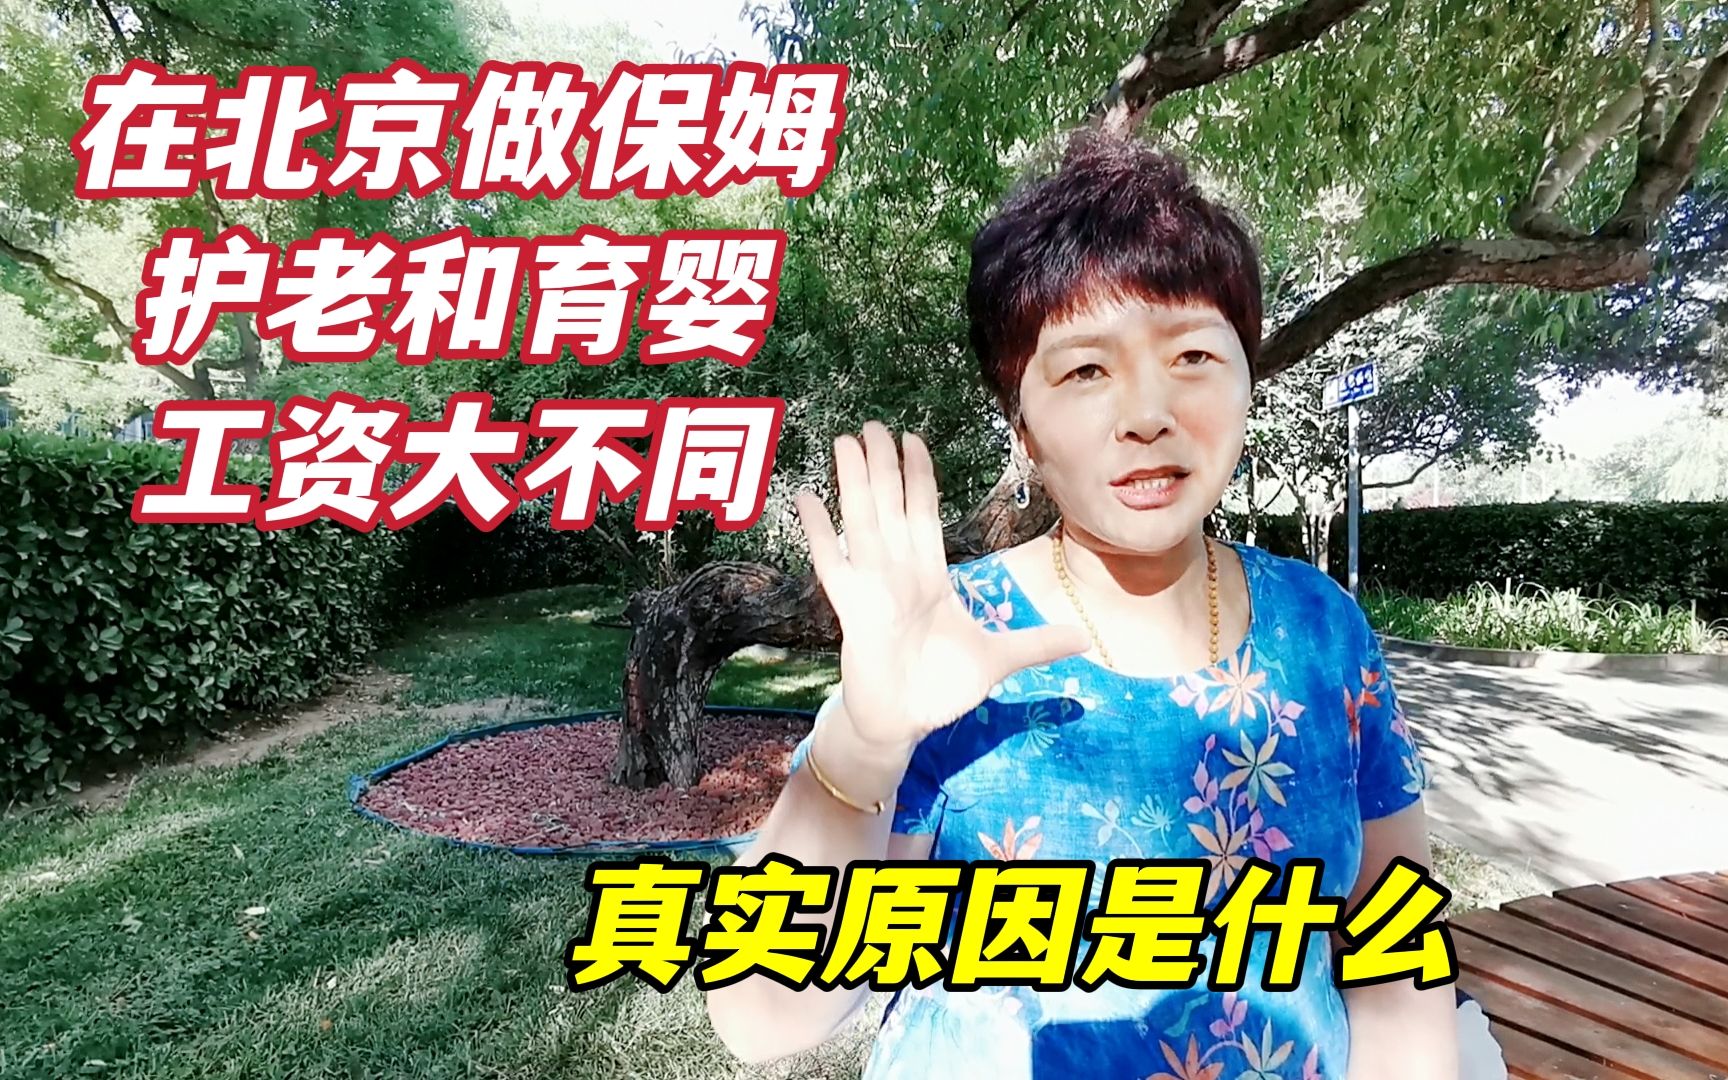 在北京做保姆照顾老人和孩子，工资差距巨大，家政大姐说法合理吗